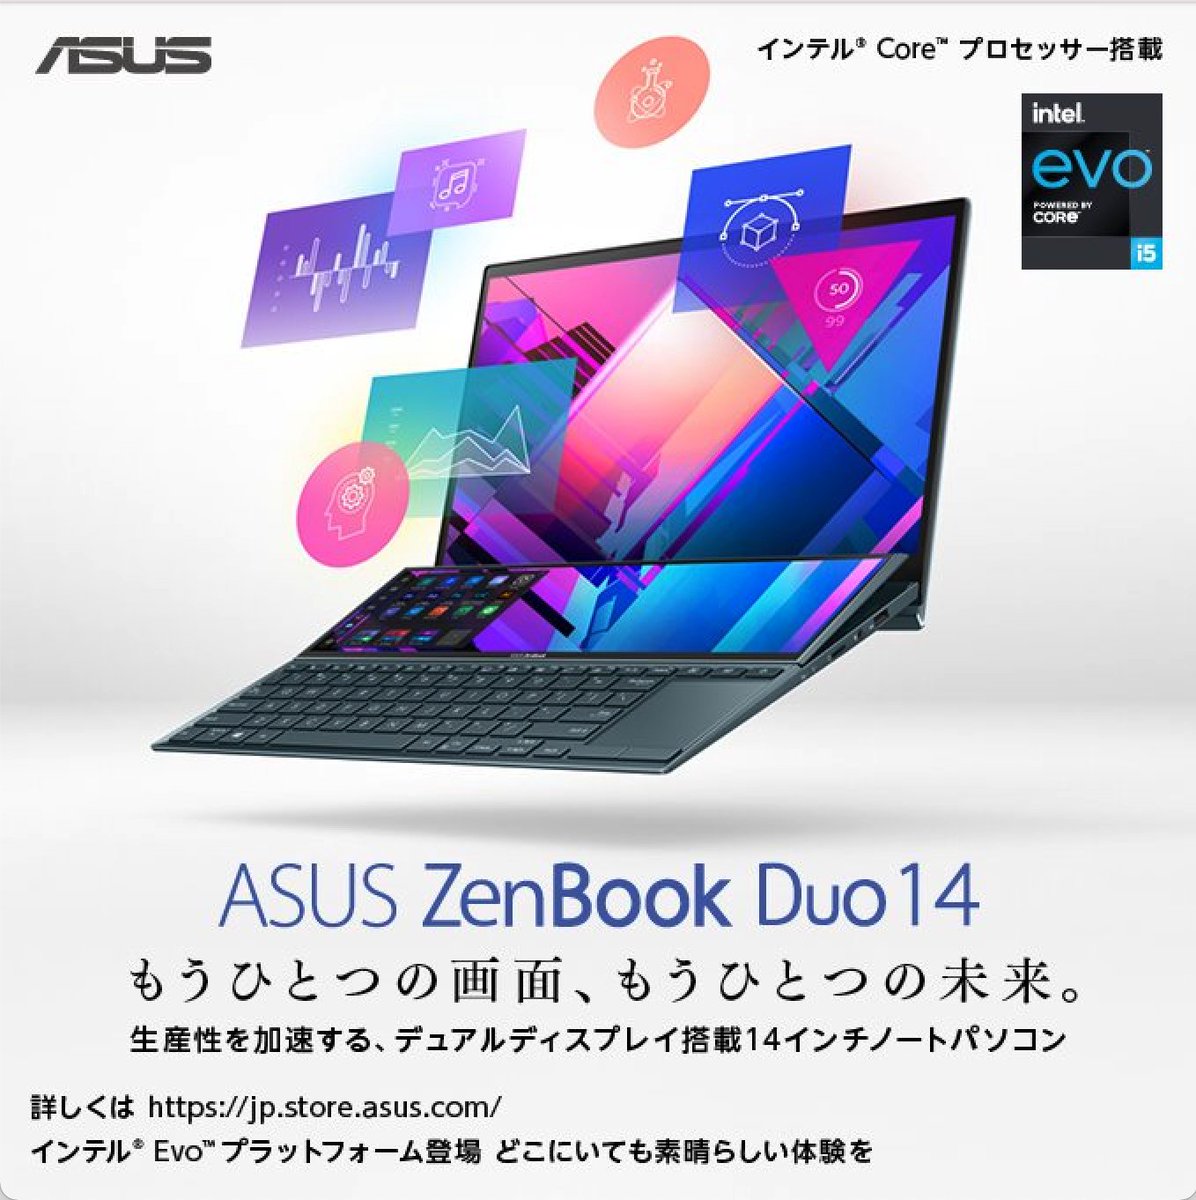 本日発売されたASUS ZenBook Duo 14 UX482、先行してしばらく使わせてもらっています！

使ってみた感想を製品サイトで語らせてもらったので、ぜひ見てみてください！

bit.ly/2PsfyjS

#ASUS #ZenBookDuo14 #もうひとつの画面もうひとつの未来 #2画面搭載ノートPC #Windows10 #PR